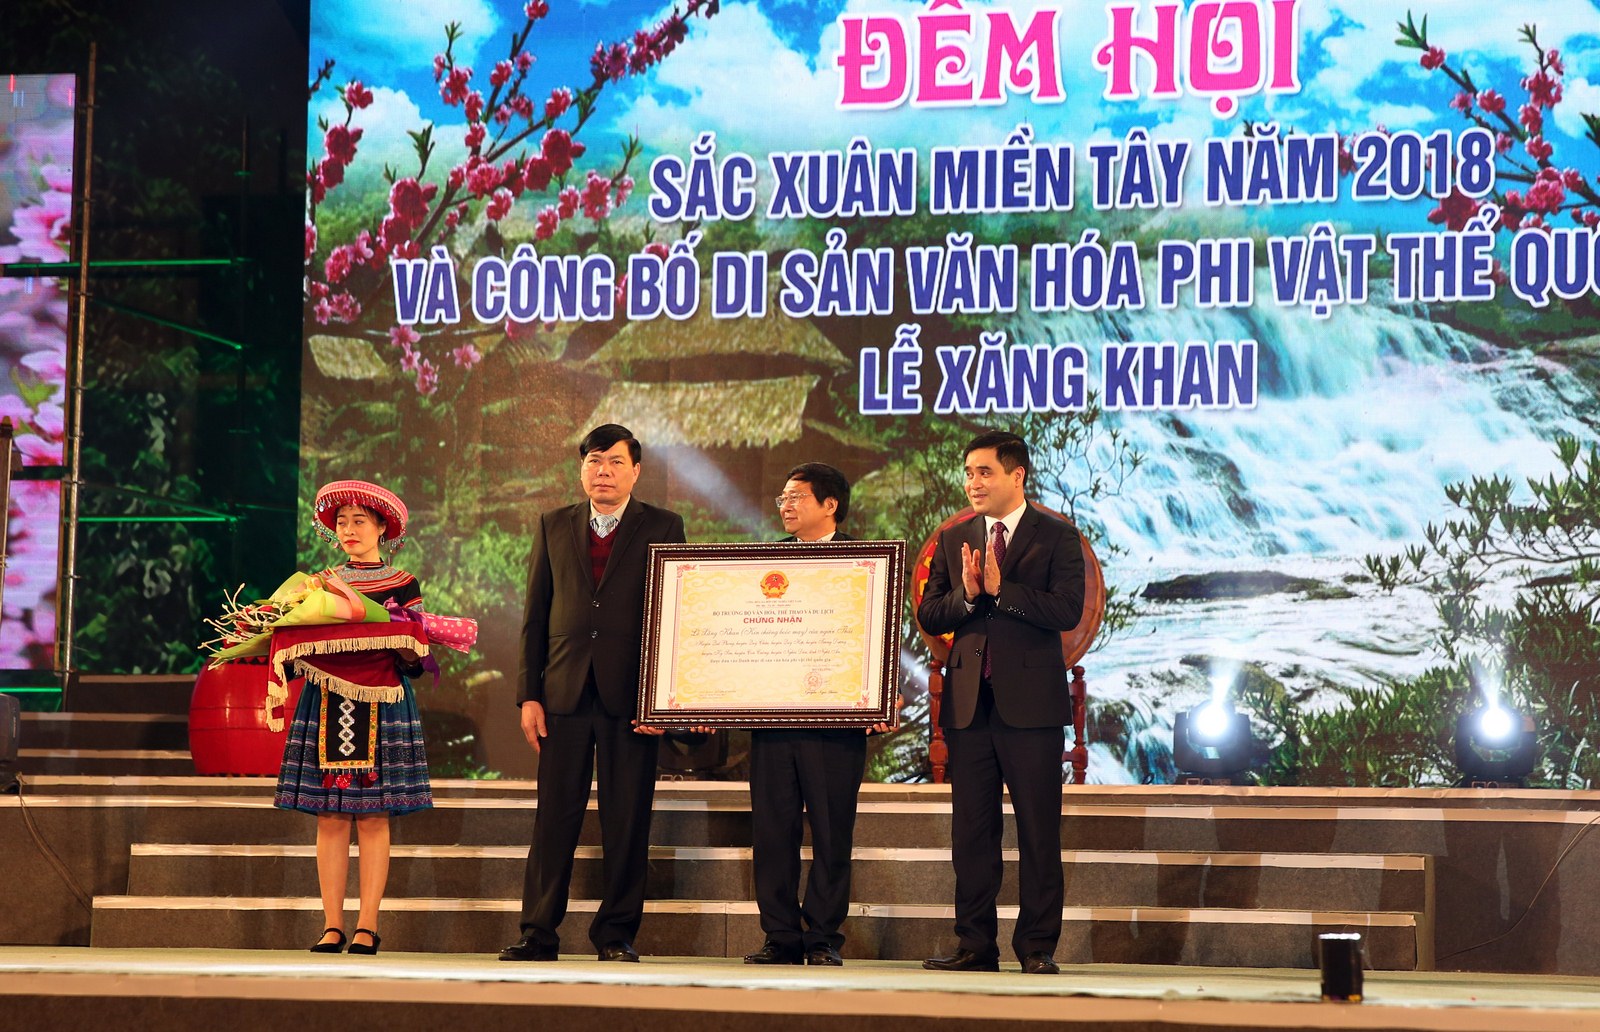 Đồng chí Phạm Định Phong - Cục phó Cục Di sản Văn hóa trao giấy chứng nhận công nhận lễ Xăng Khan là di sản văn hóa phi vật thể cấp quốc gia.